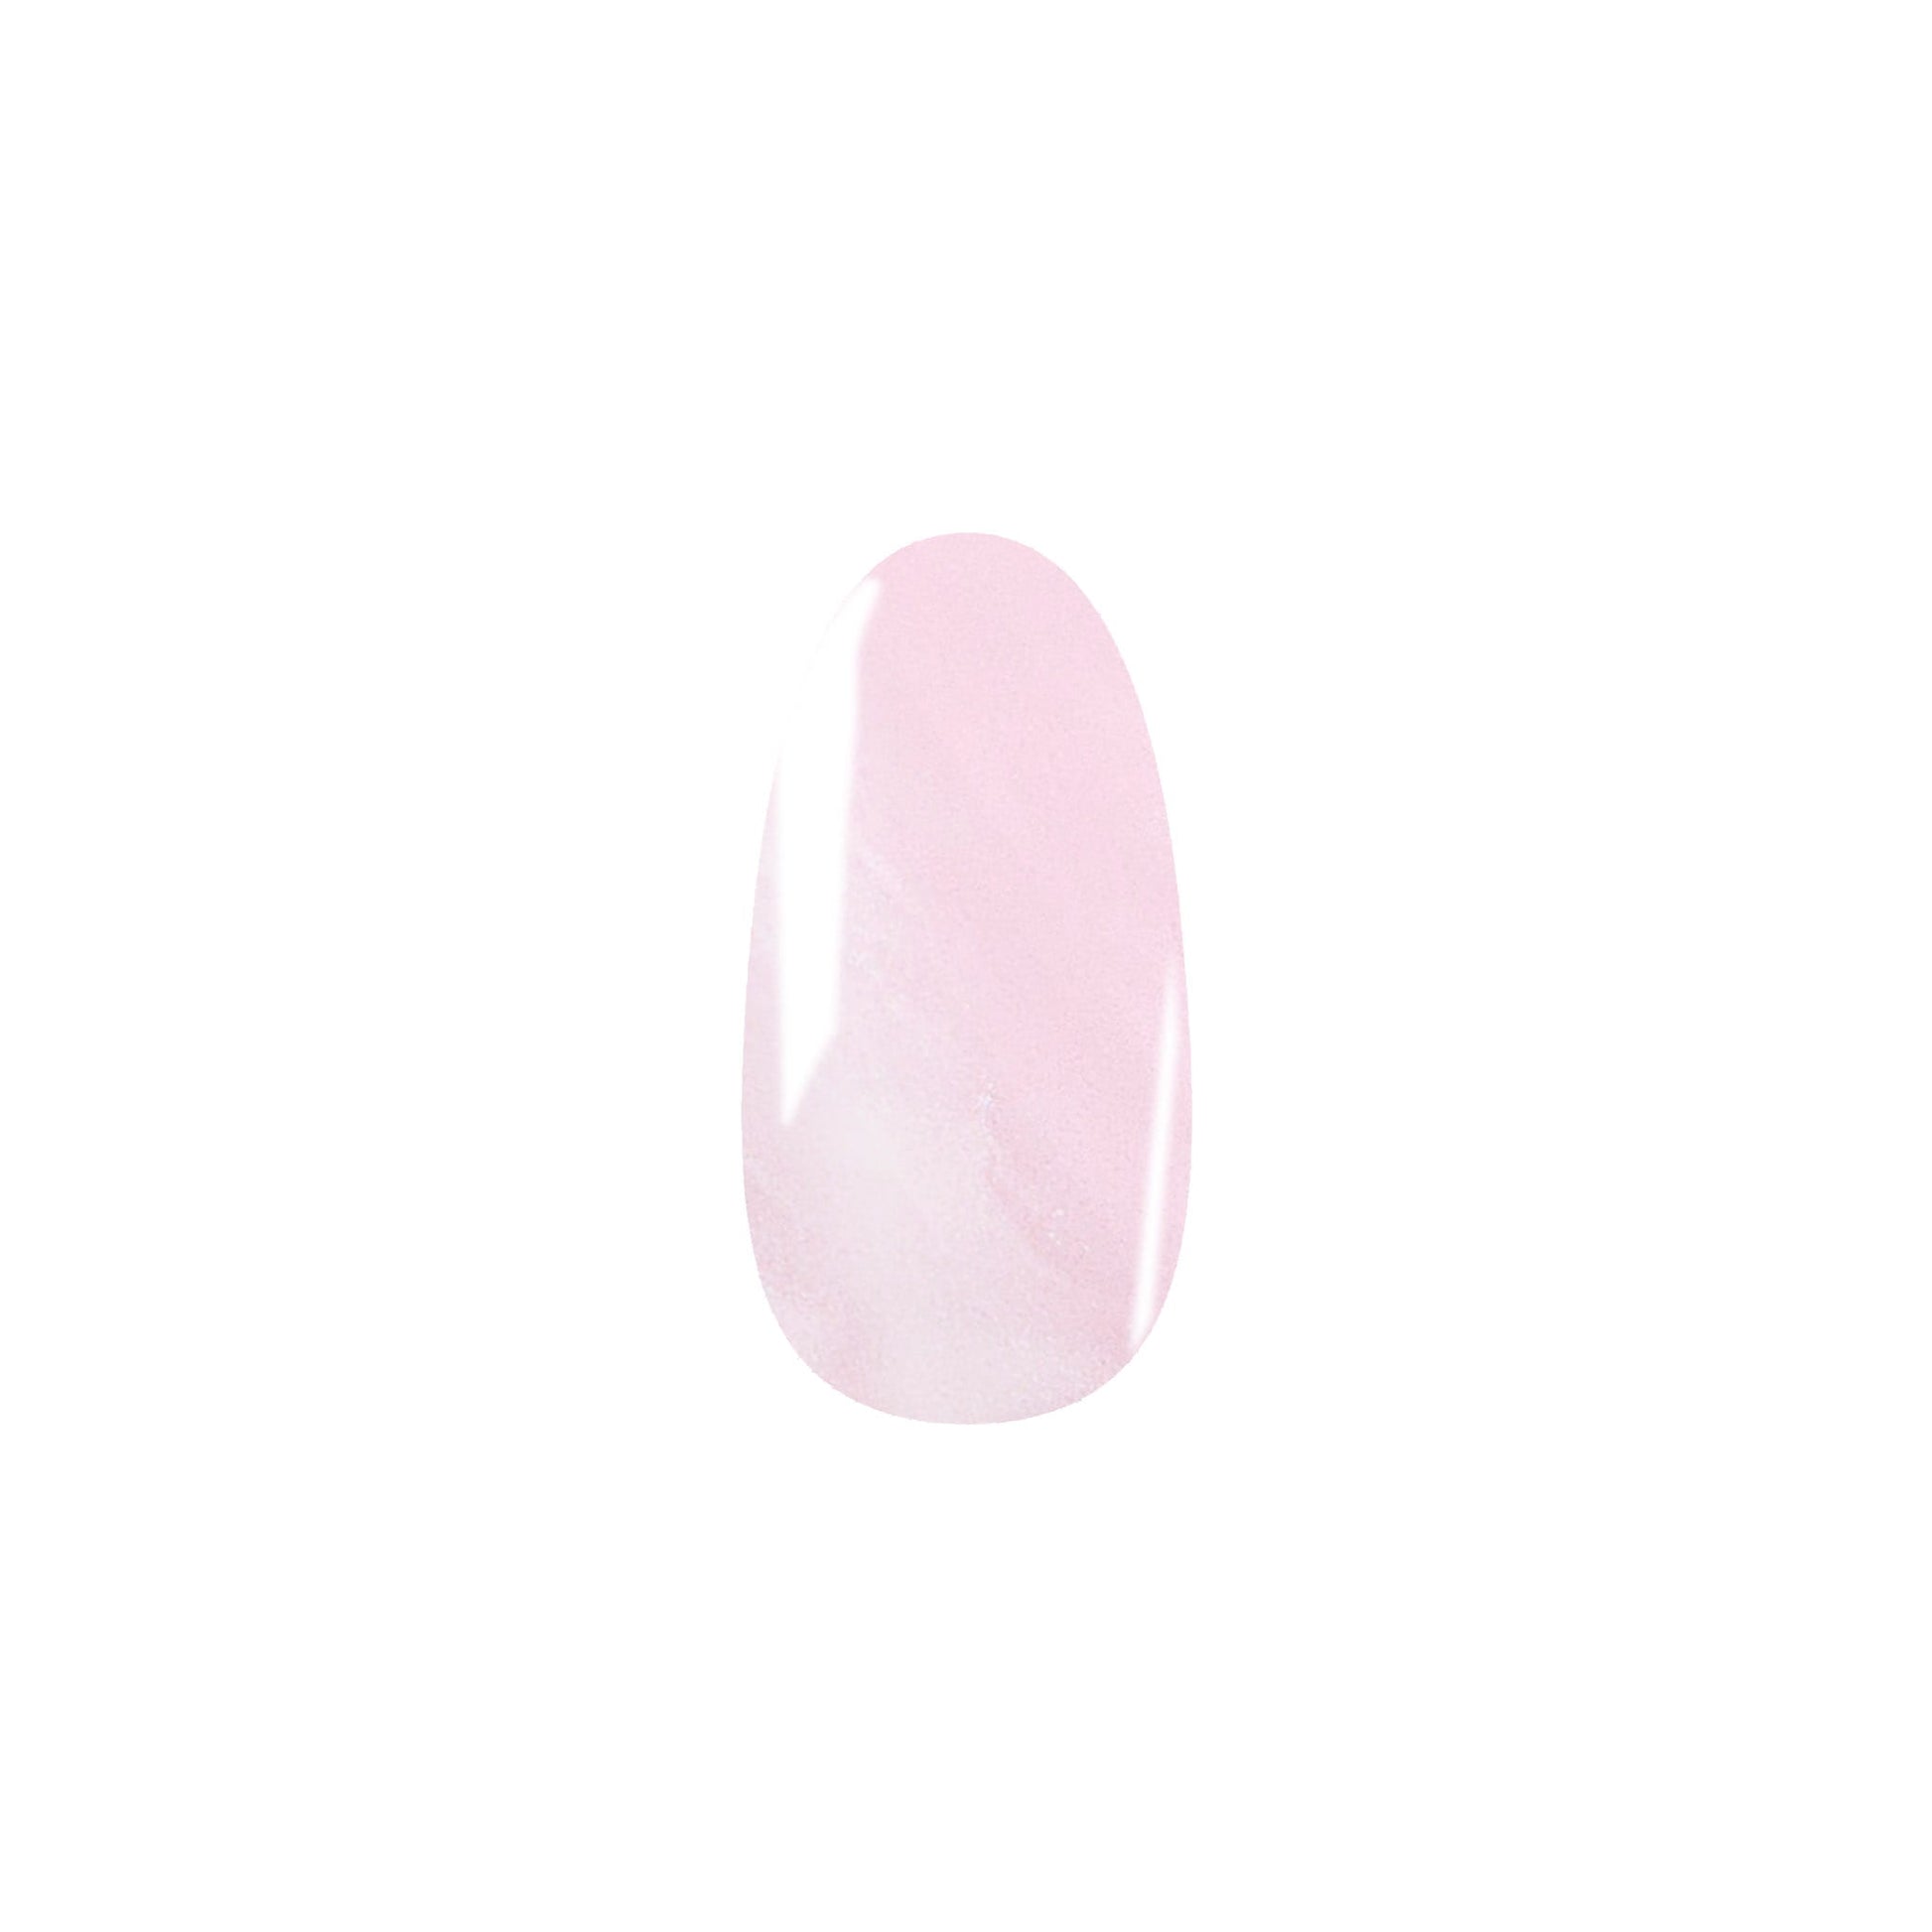 Chrome Rose Pink HEMA-Free Gel Nail Polish